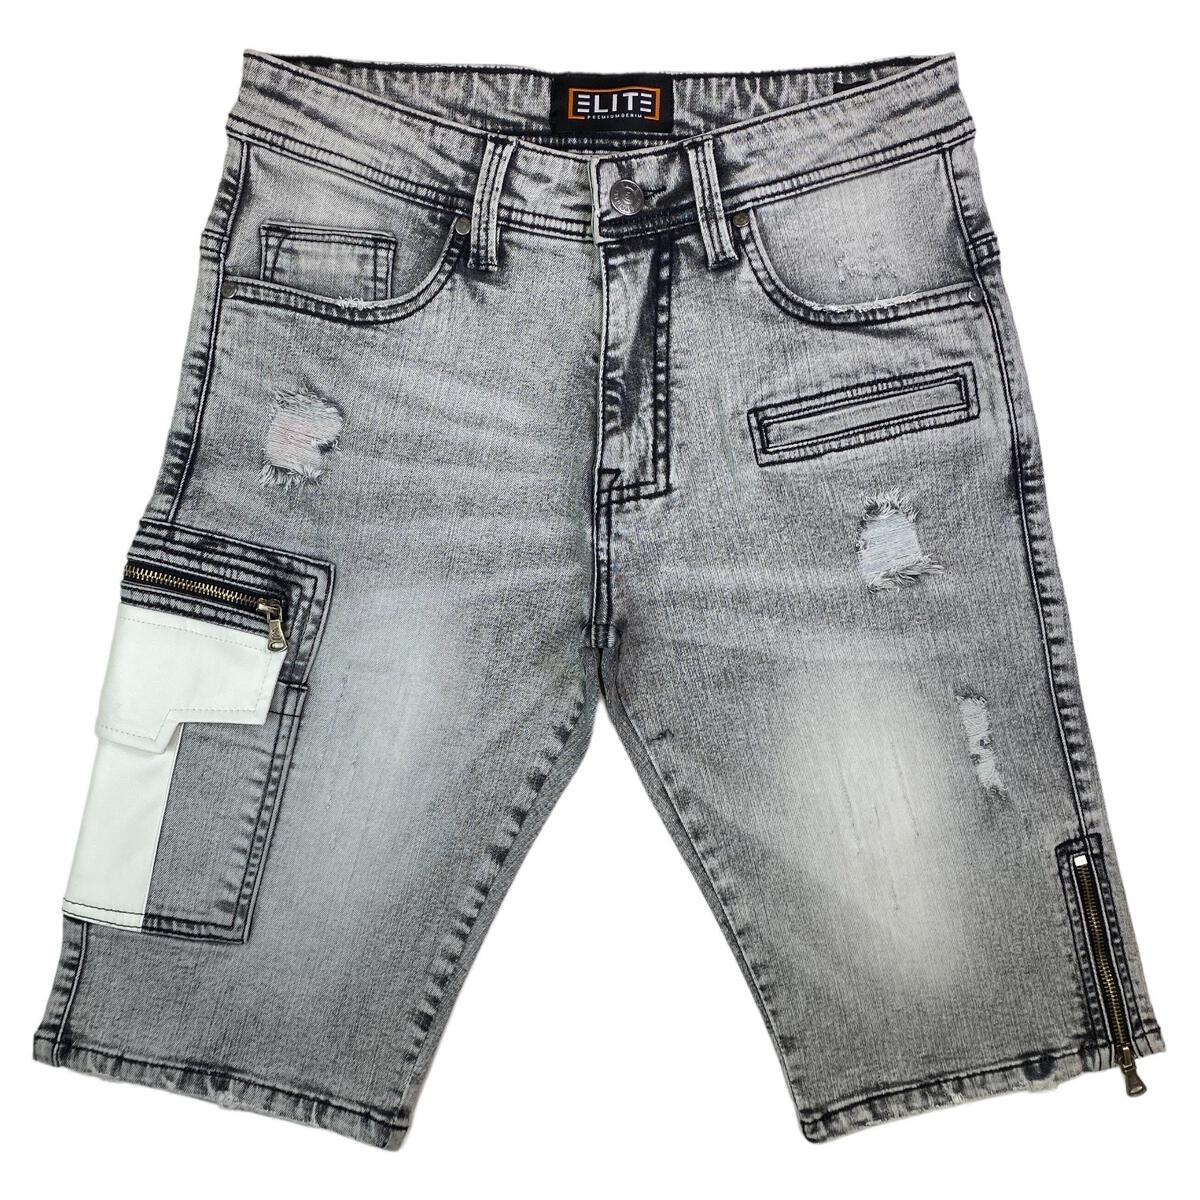 Elite Premium Denim - Grey Acid Men's Denim Shorts